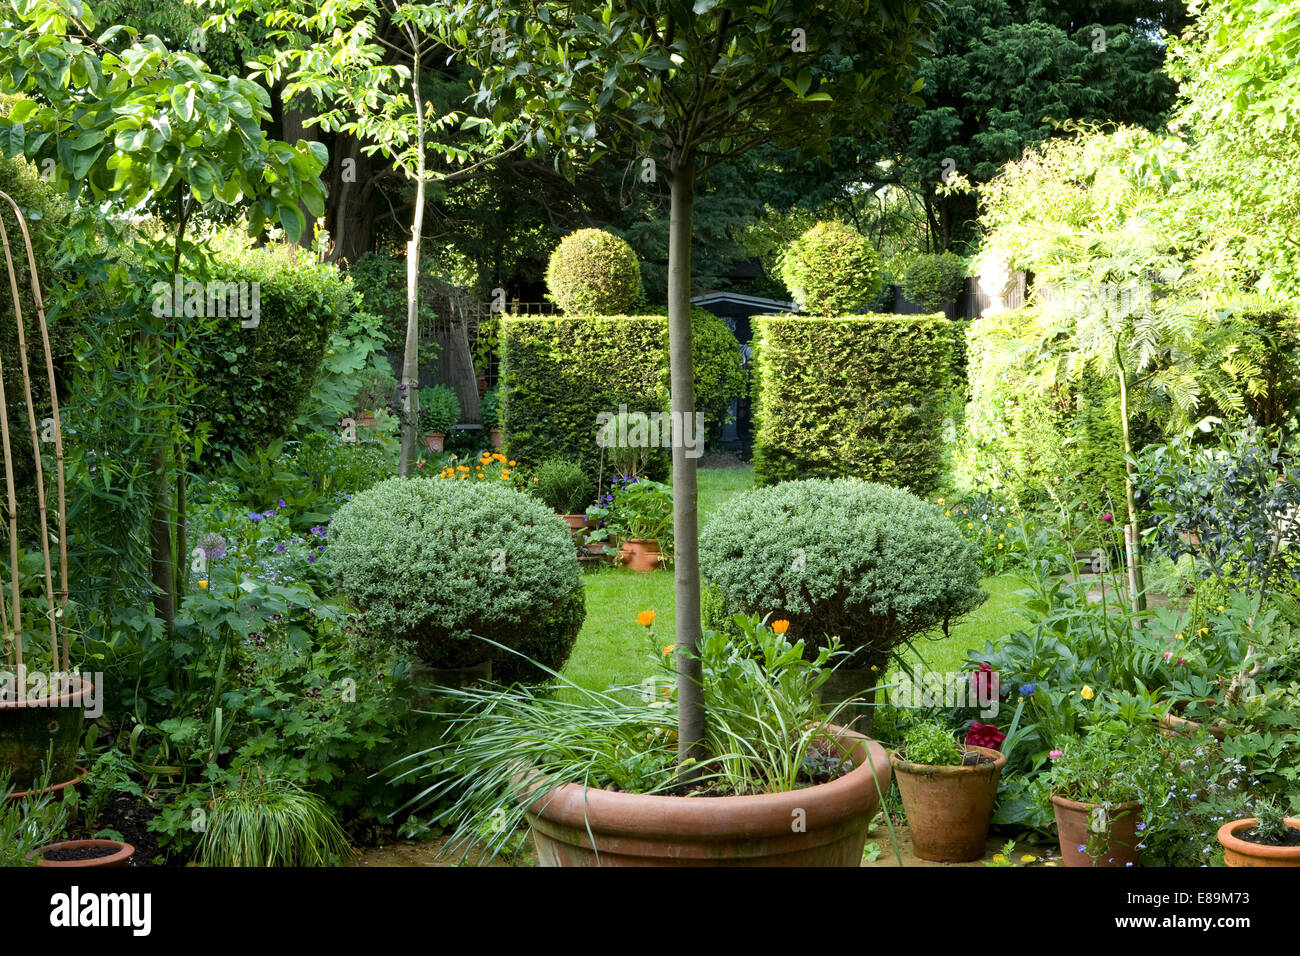 Arbustes taillés et un bay tree en pots de terre cuite dans le jardin d'été avec des haies coupées Banque D'Images